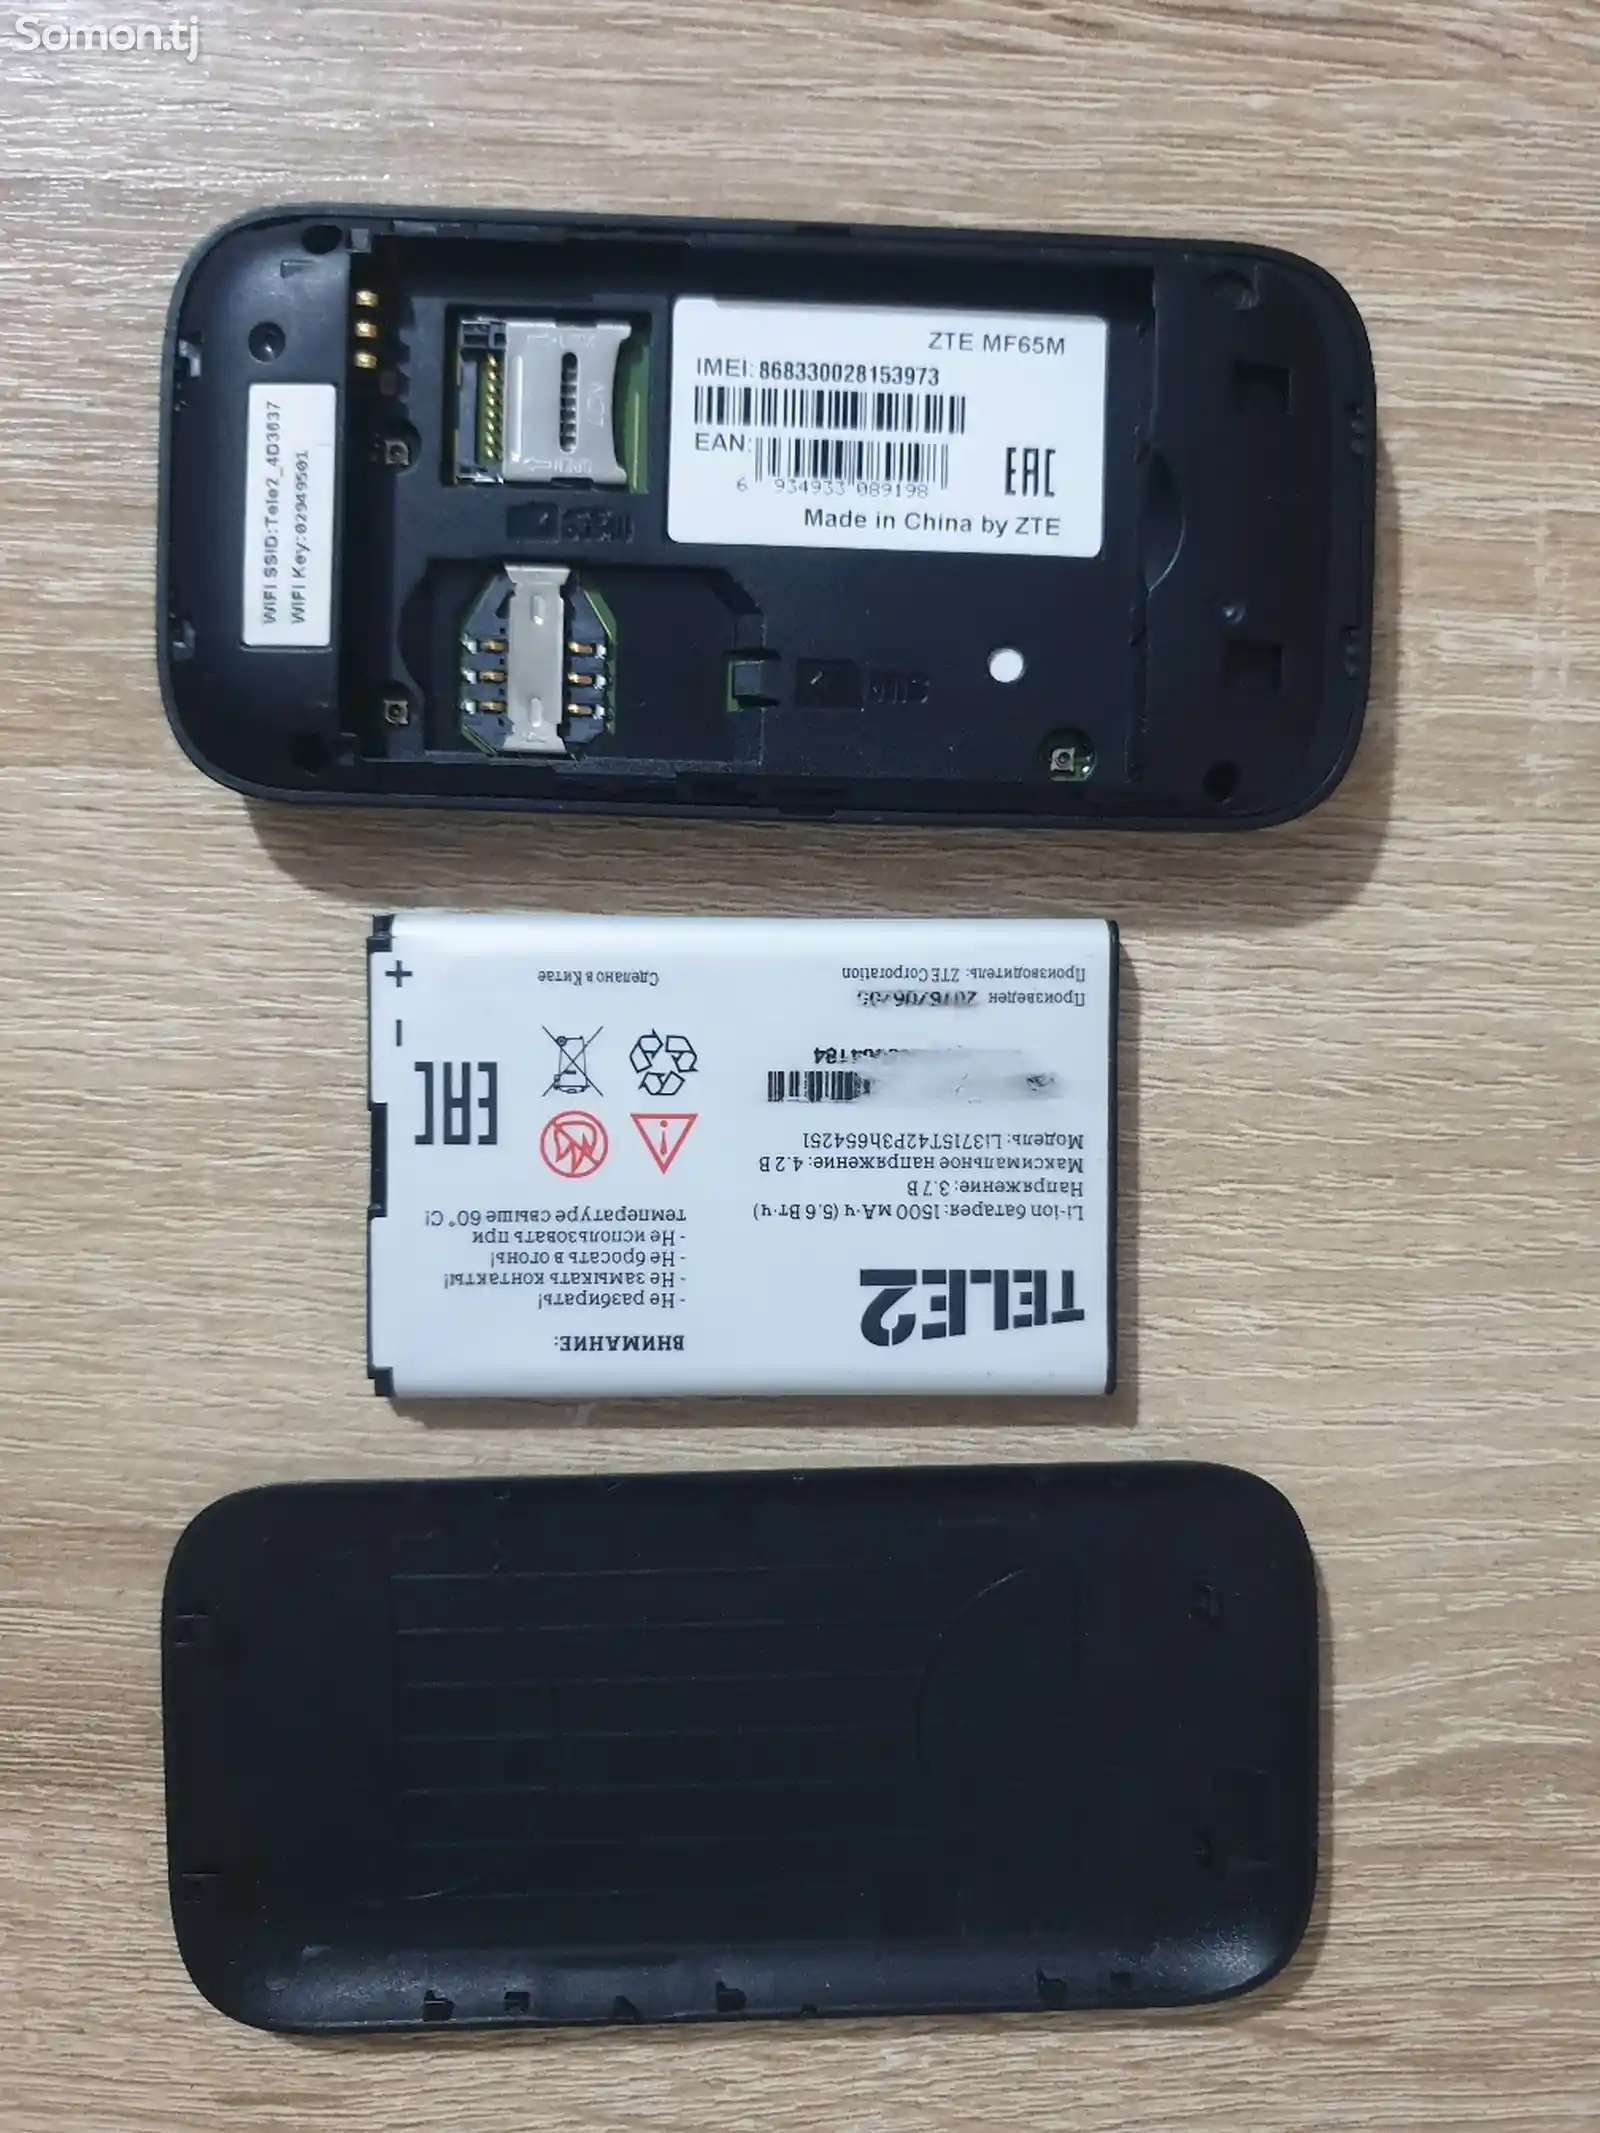 Компактные 3G-роутеры от Теле2-2